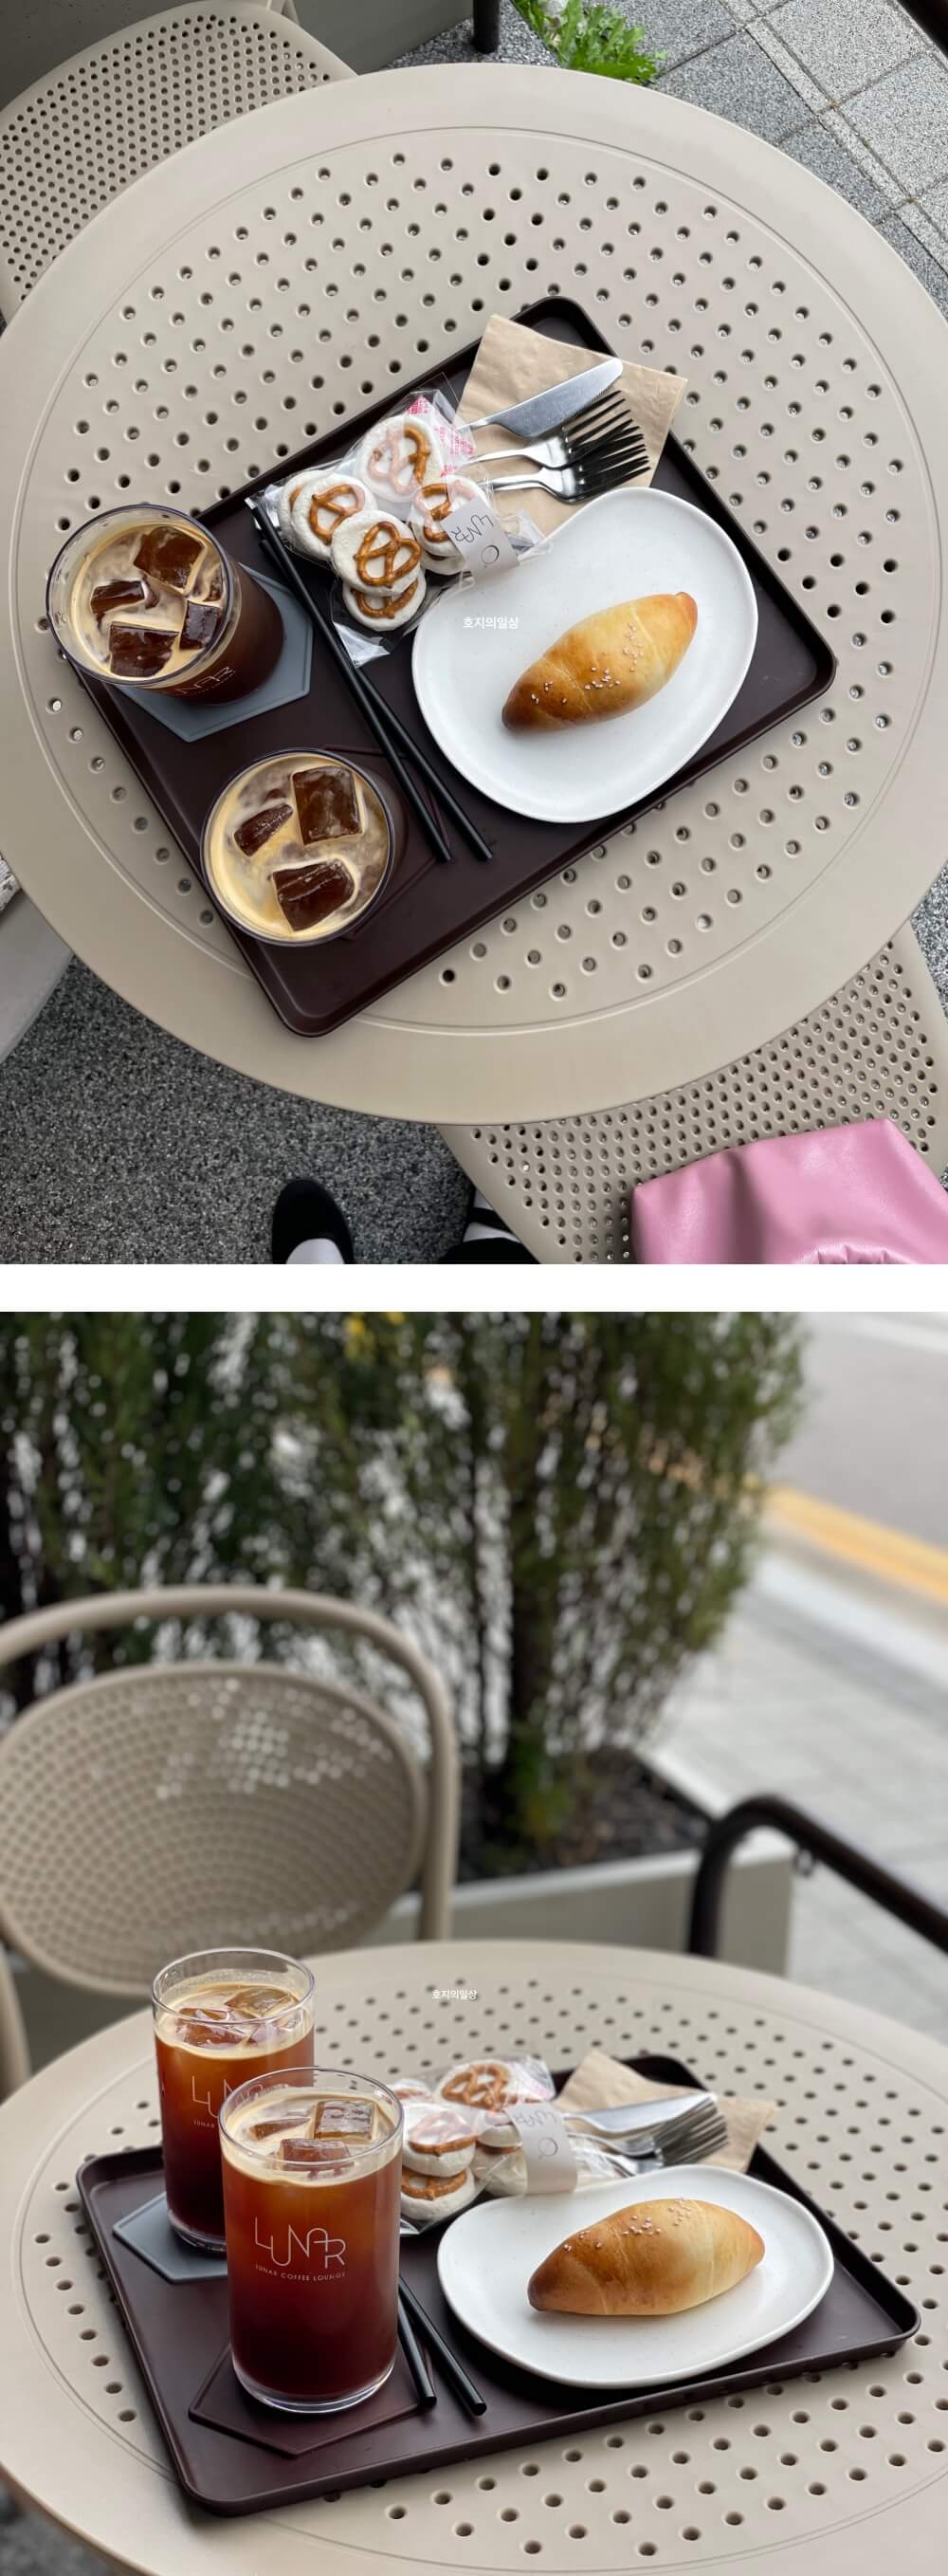 고기리 카페 루나커피 라운지 - 탁자위에 놓인 커피와 빵